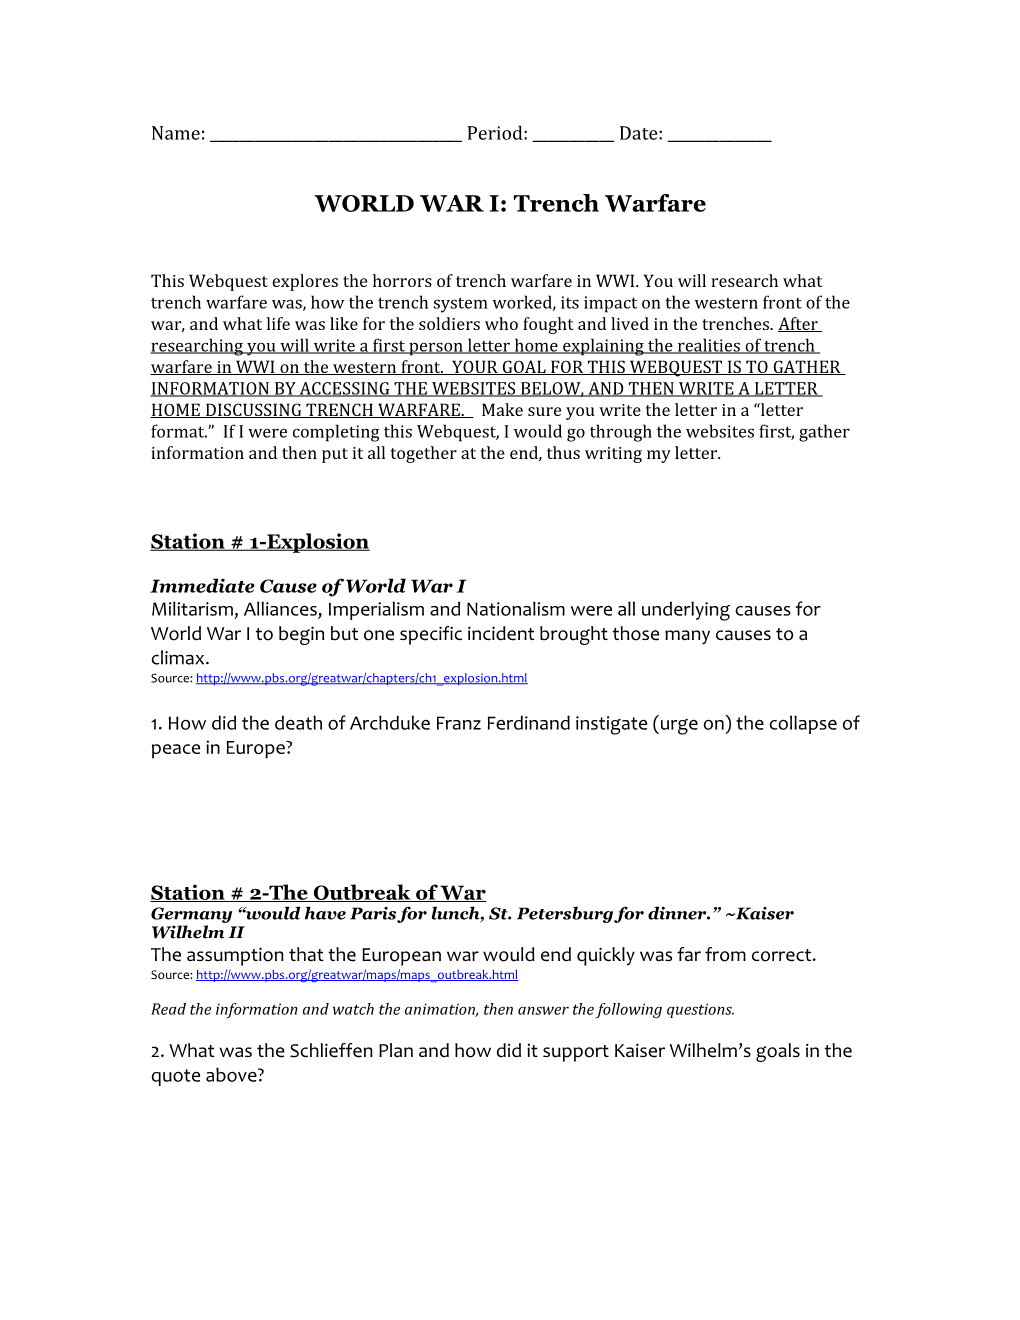 WORLD WAR I: Trench Warfare